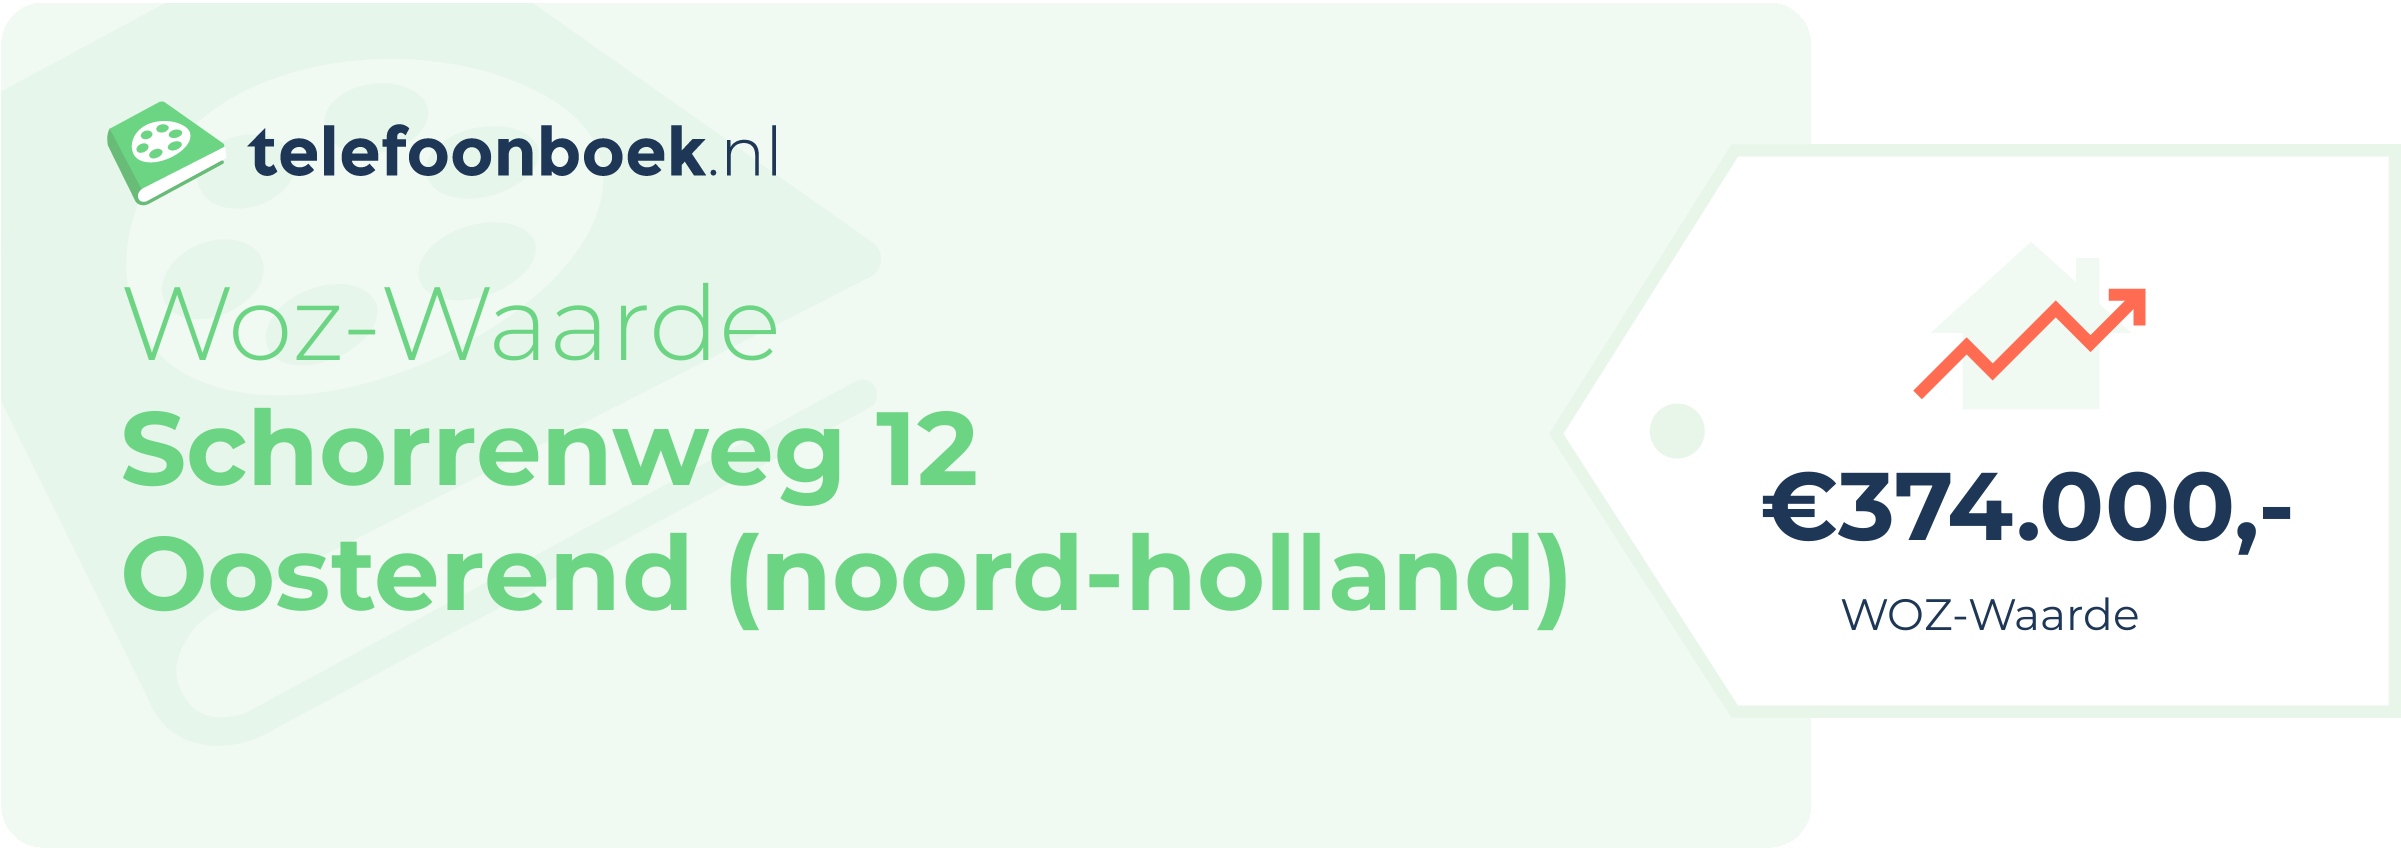 WOZ-waarde Schorrenweg 12 Oosterend (Noord-Holland)